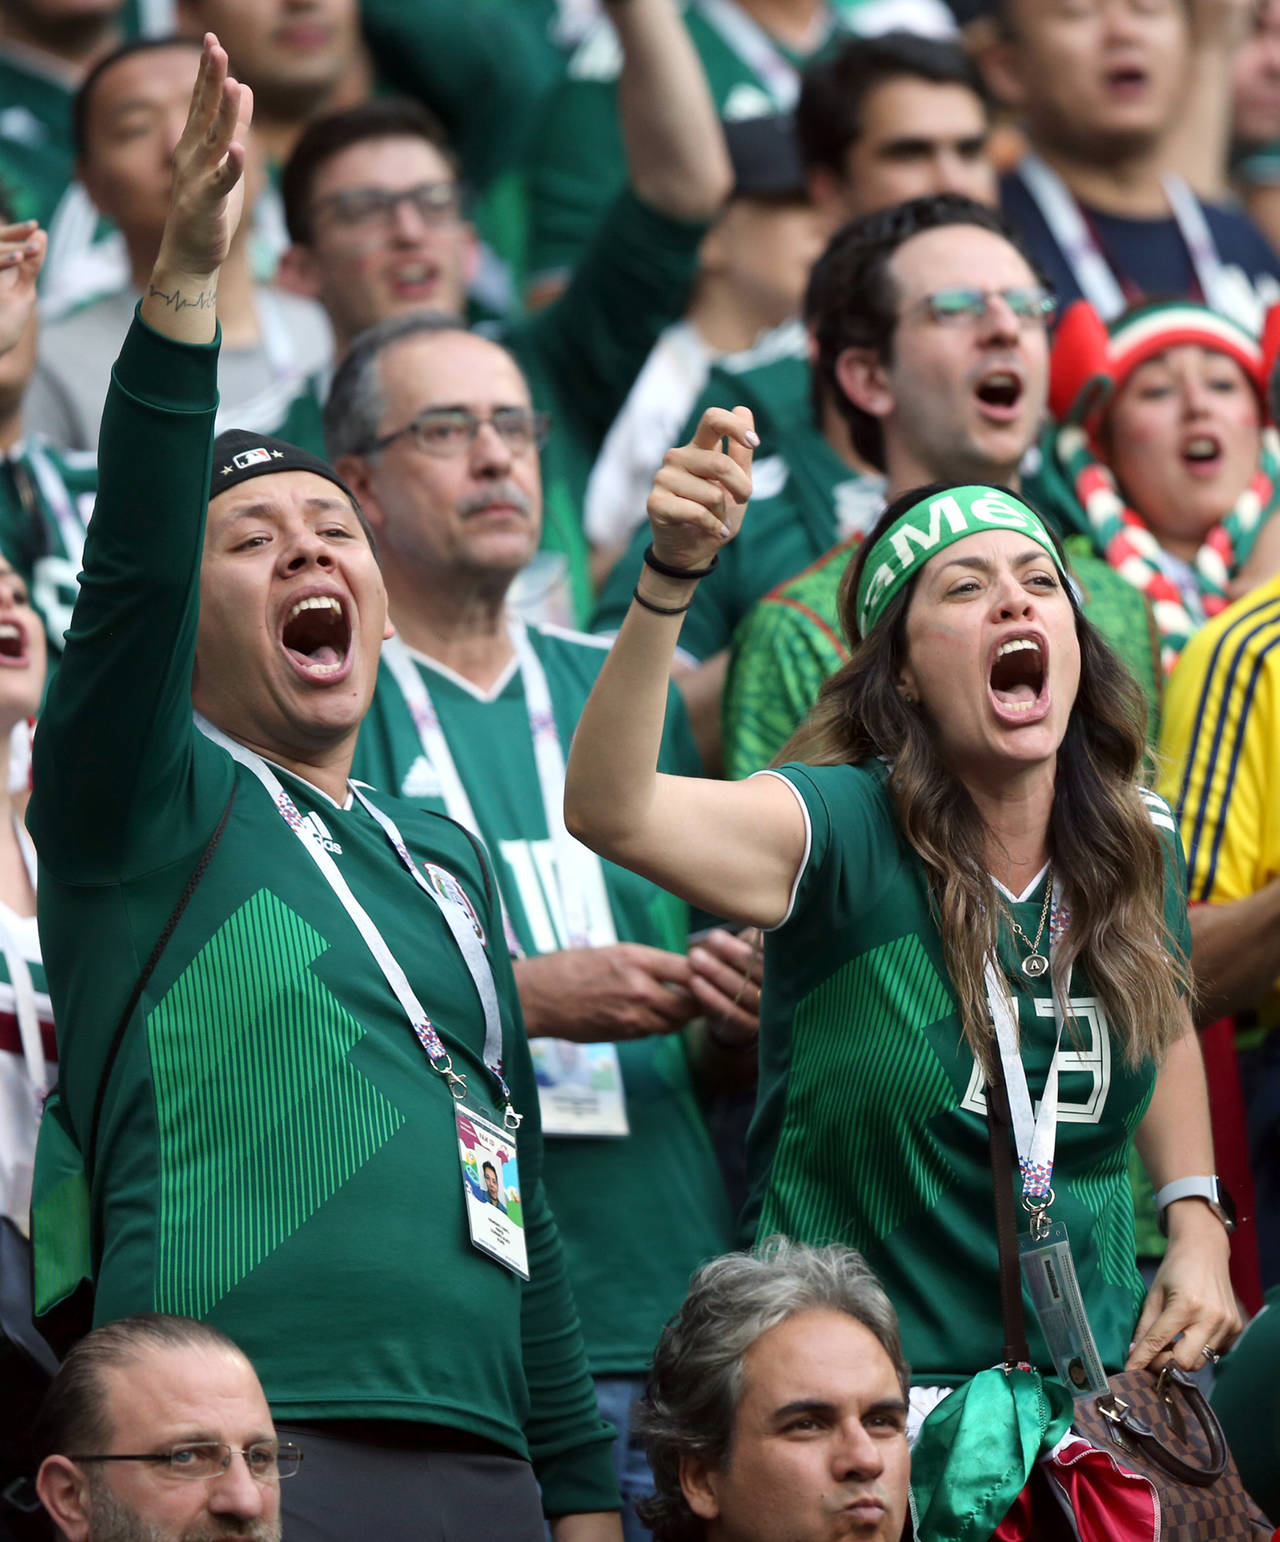 Unos cuantos aficionados mexicanos reincidieron en emitir el grito que molesta a la FIFA. FIFA multa otra vez a FMF por grito